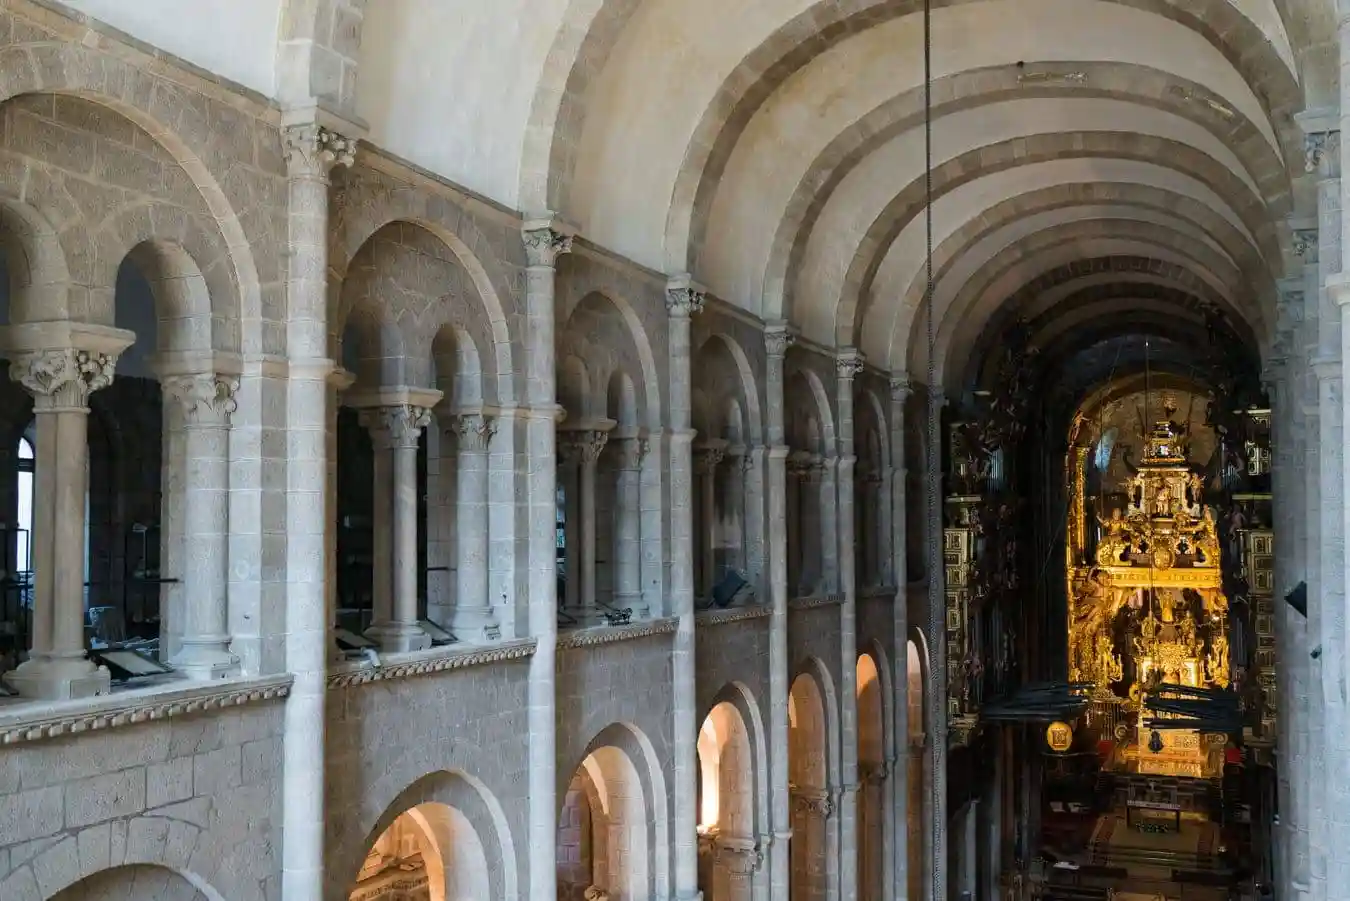 Vista parcial de los vanos del triforio del brazo mayor de la catedral